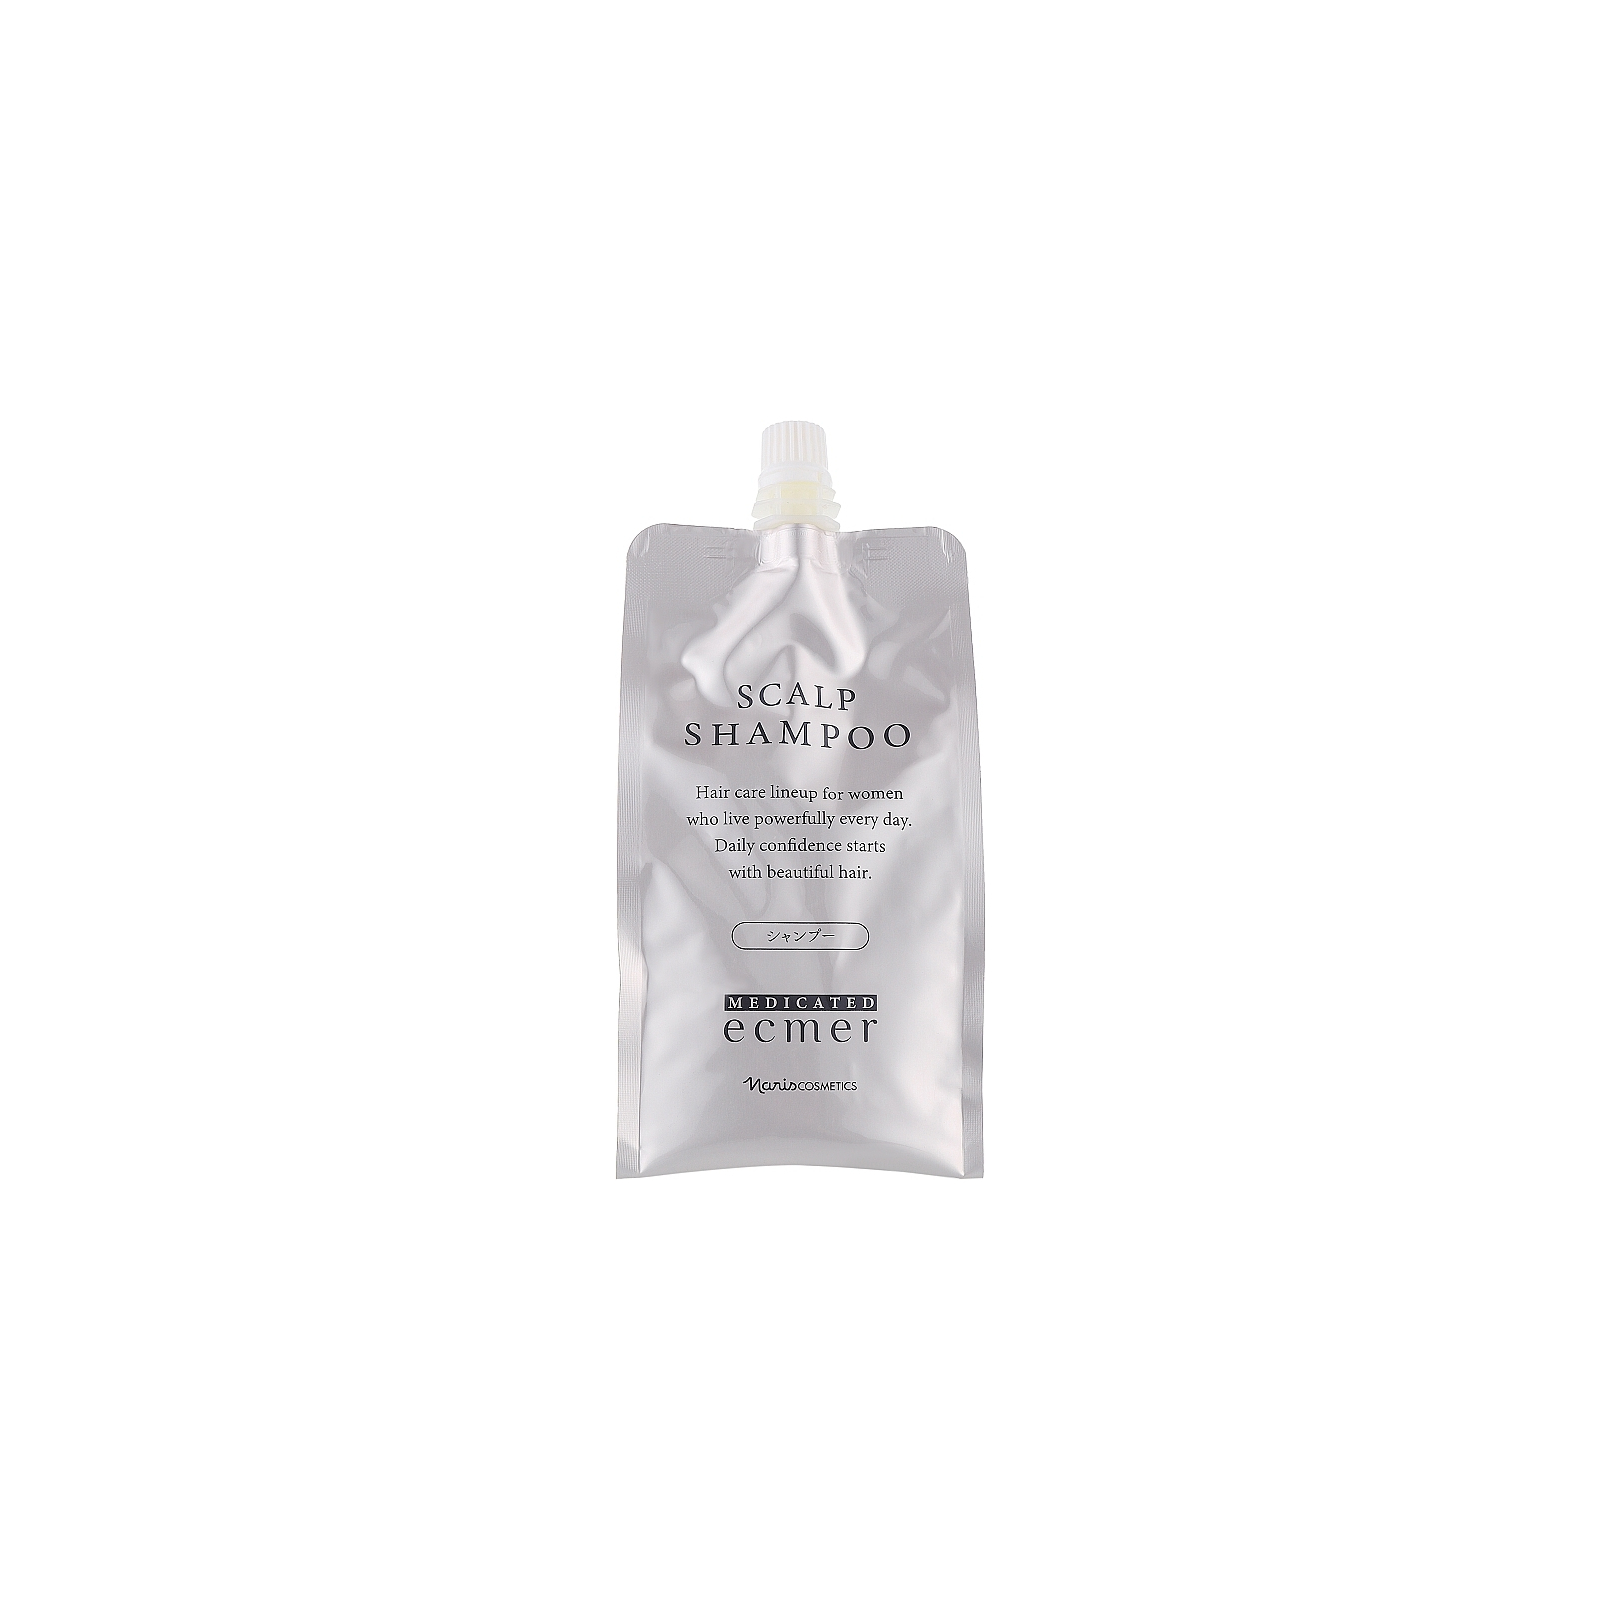 Шампунь Naris Cosmetics Ecmer Scalp Shampoo Для чувствительной кожи головы Запаска 400 мл (4955814443887)